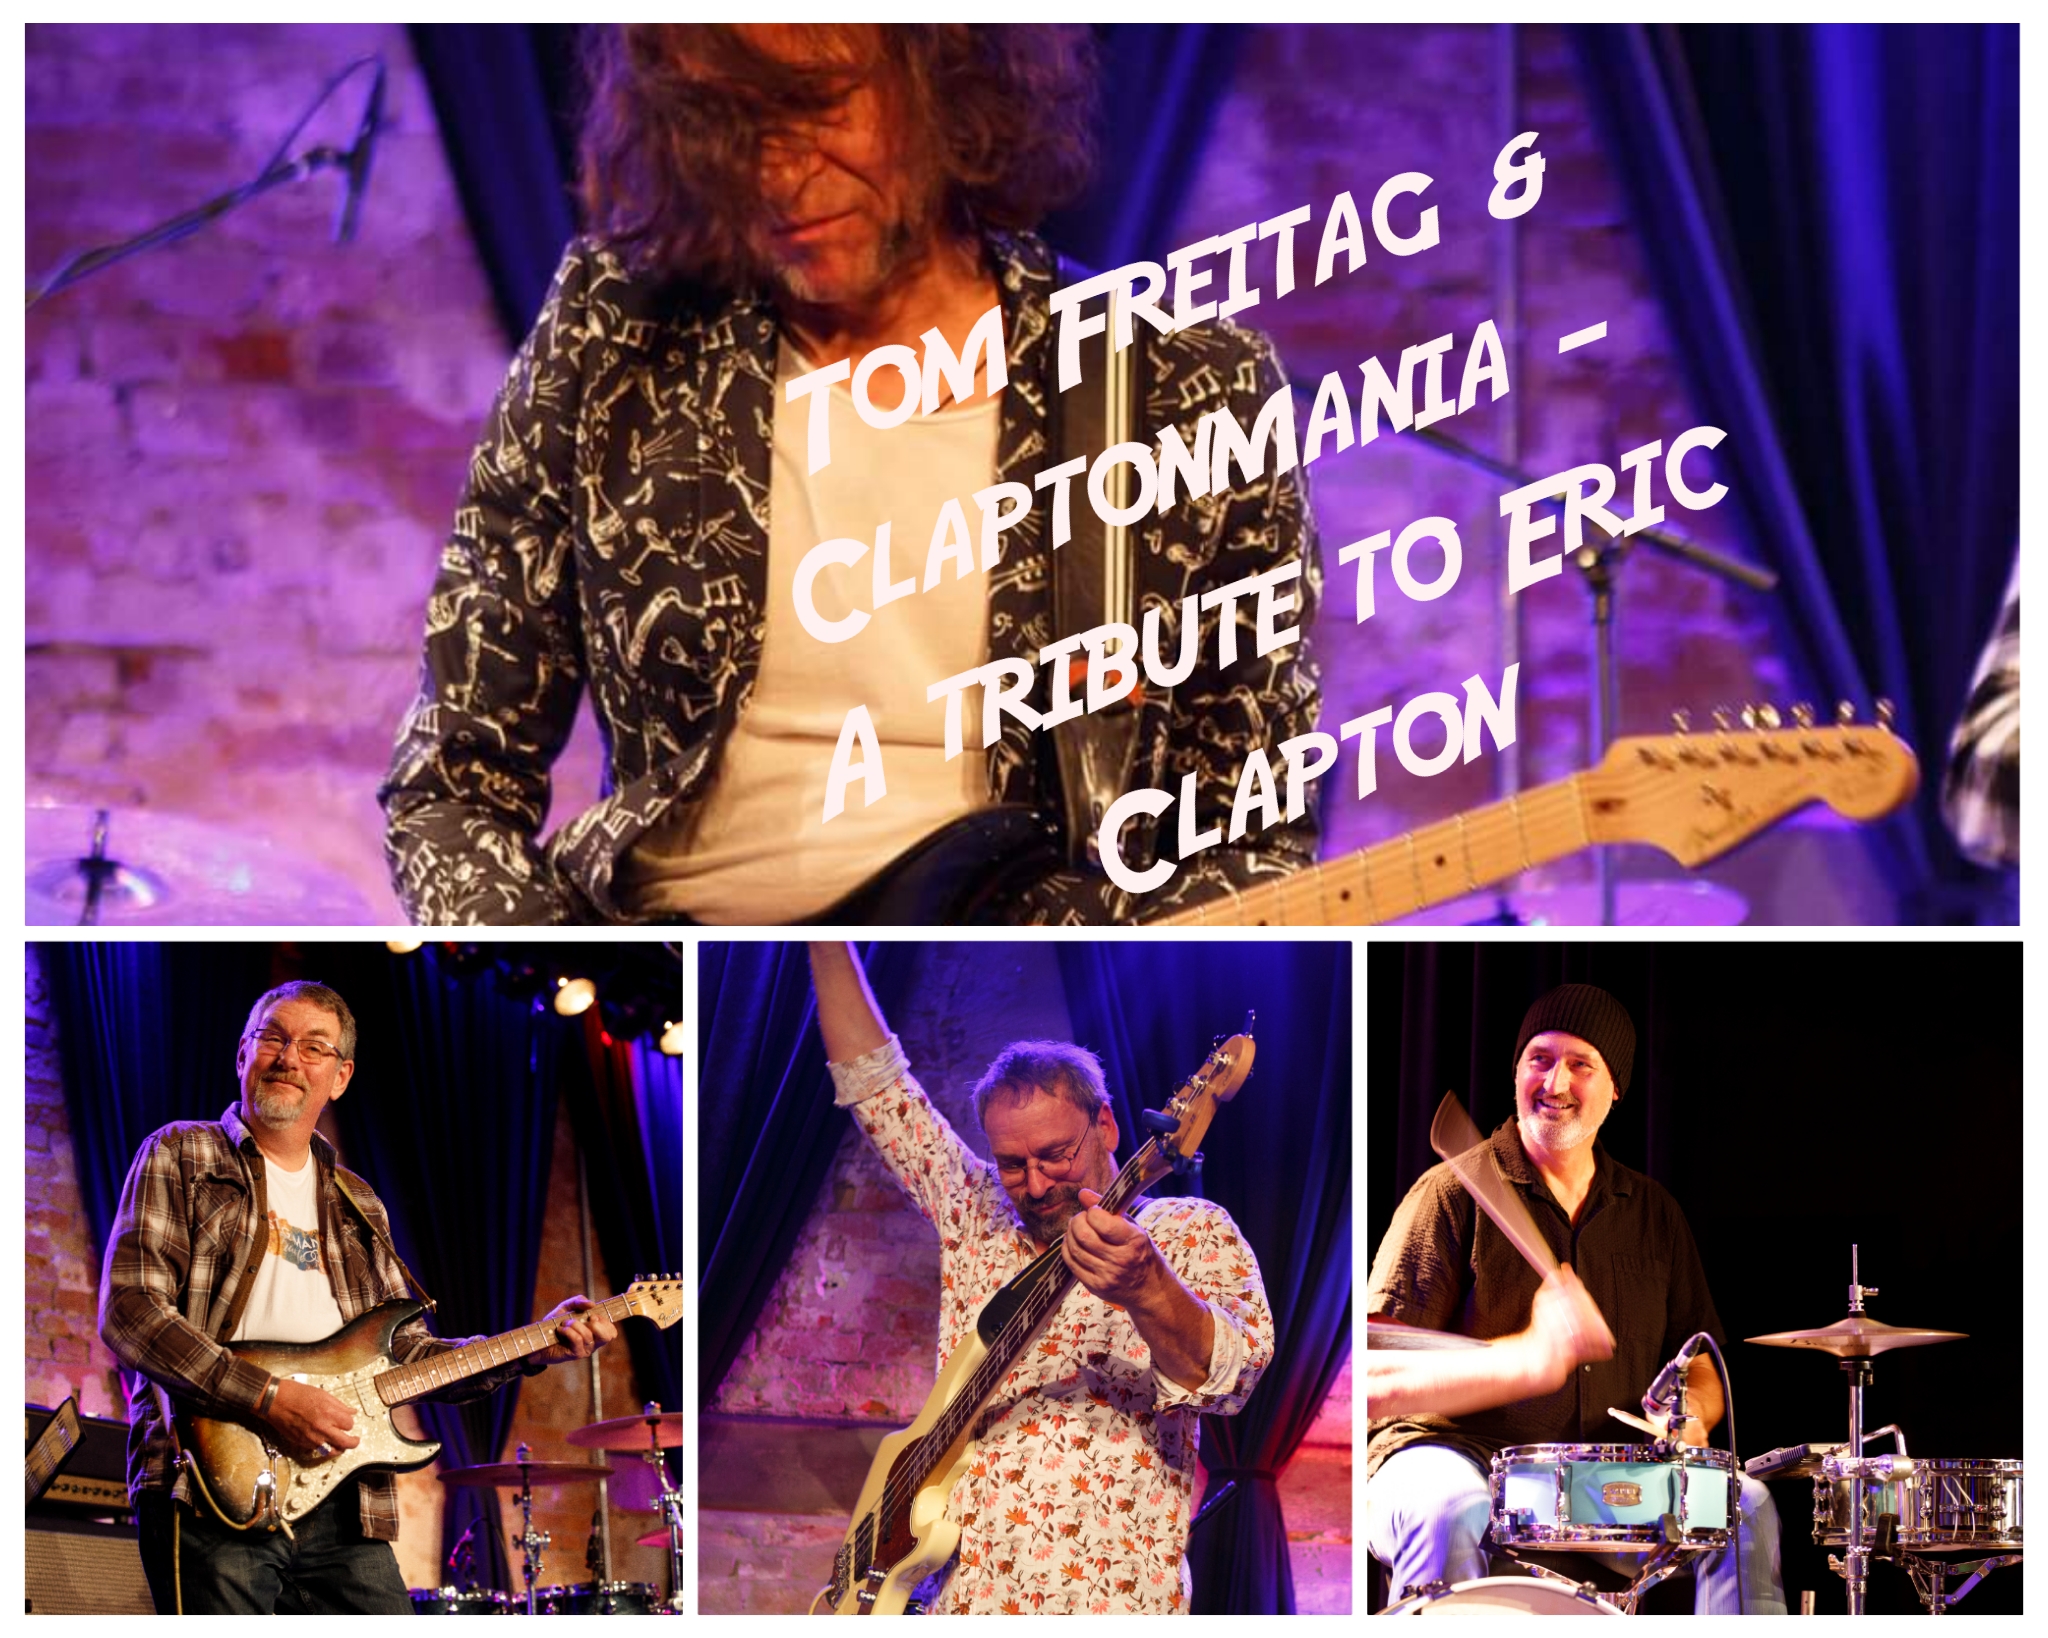 Tom Freitag & Claptonmania (A tribute to Eric Clapton)